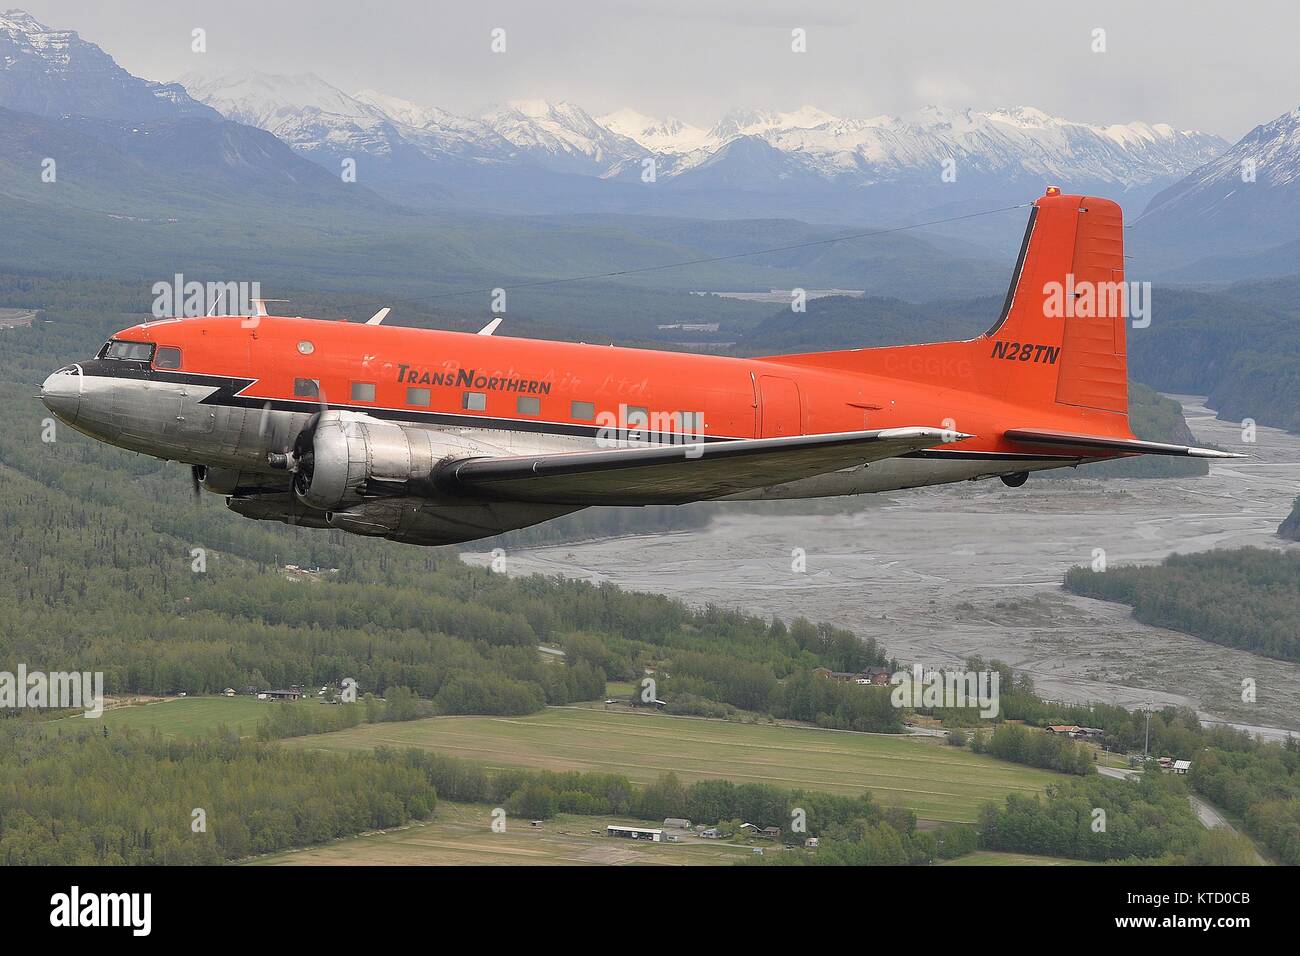 DOUGLAS AVIATION TRANSNORTHERN C-117D N28TN PRÈS DE PALMER, de l'ALASKA. Banque D'Images